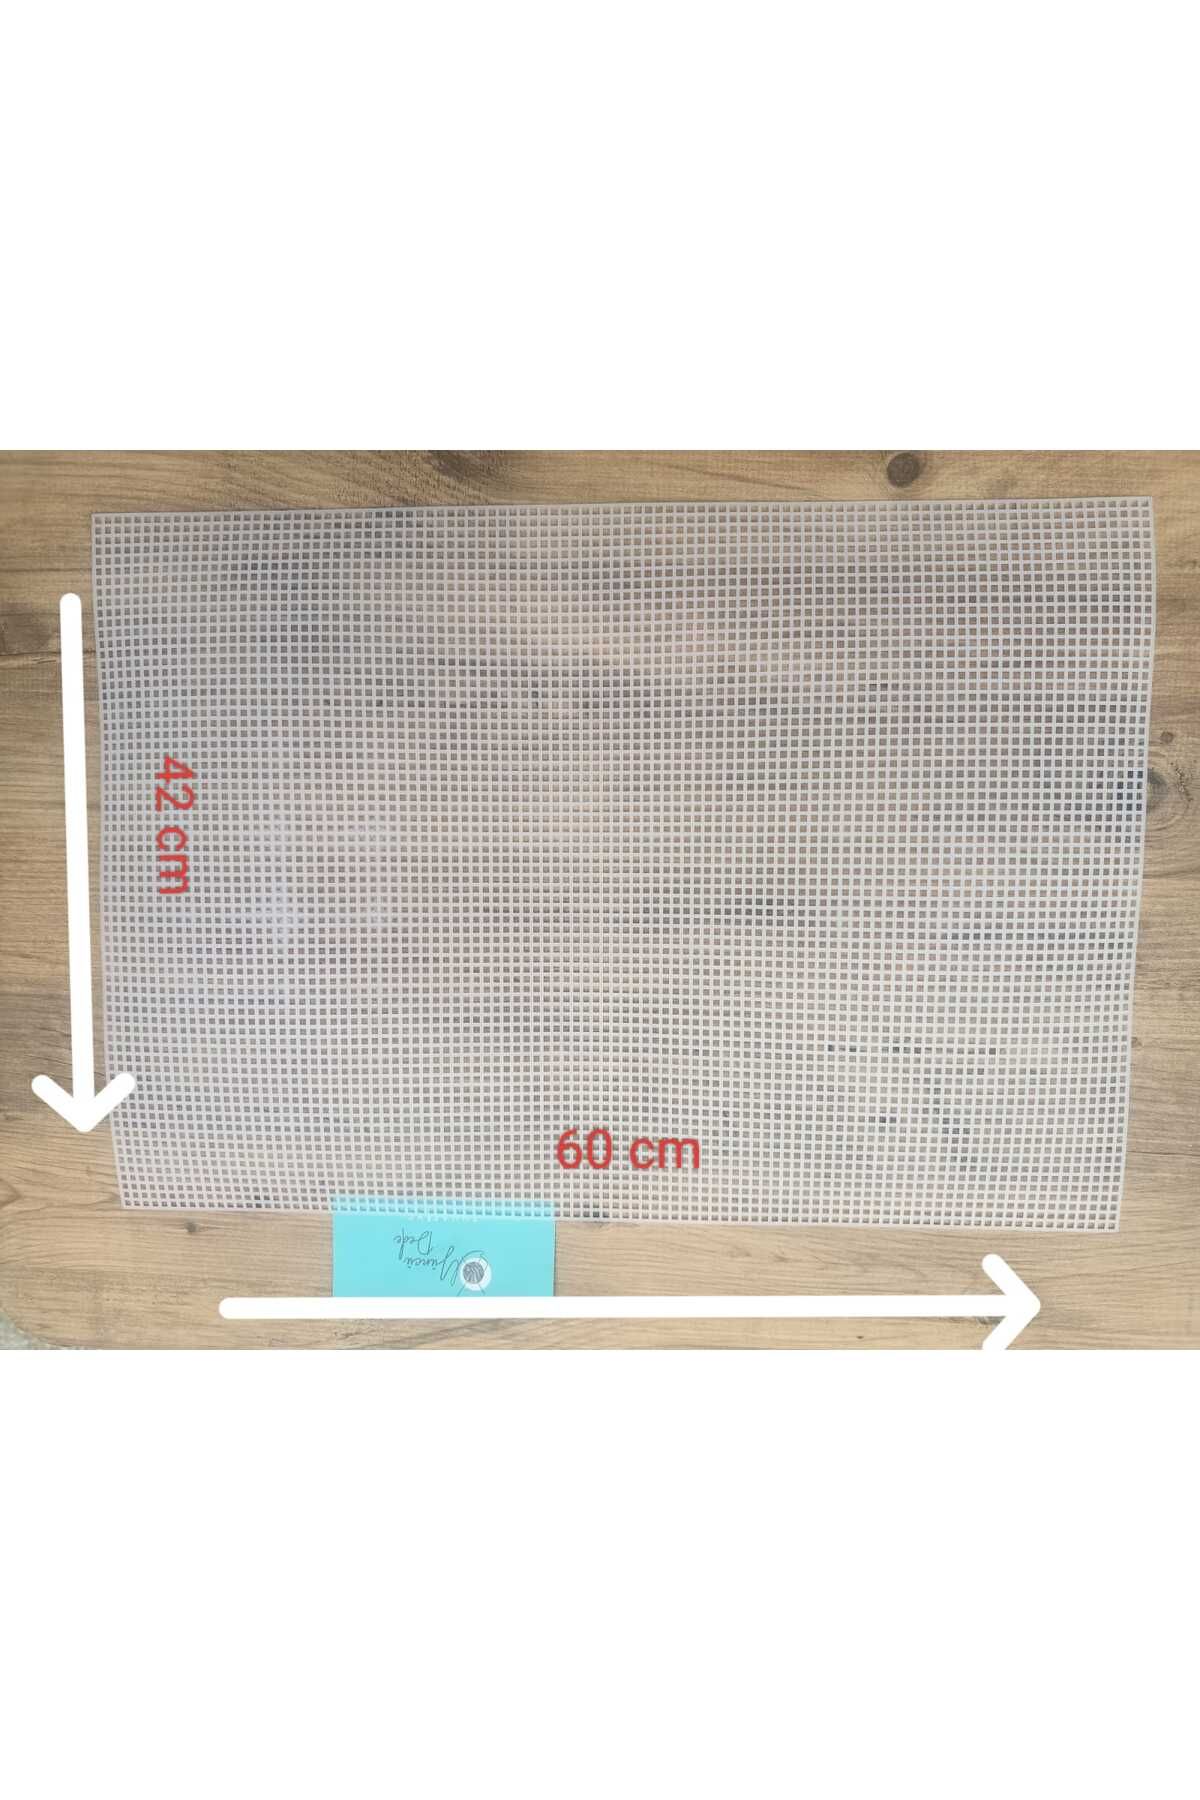 Yüncü Dede Örgü Çanta Yapımı Için Beyaz Plastik Kanvas Plaka 60x42 Cm Resimdeki Örnek Çantayı Yapabilirsiniz